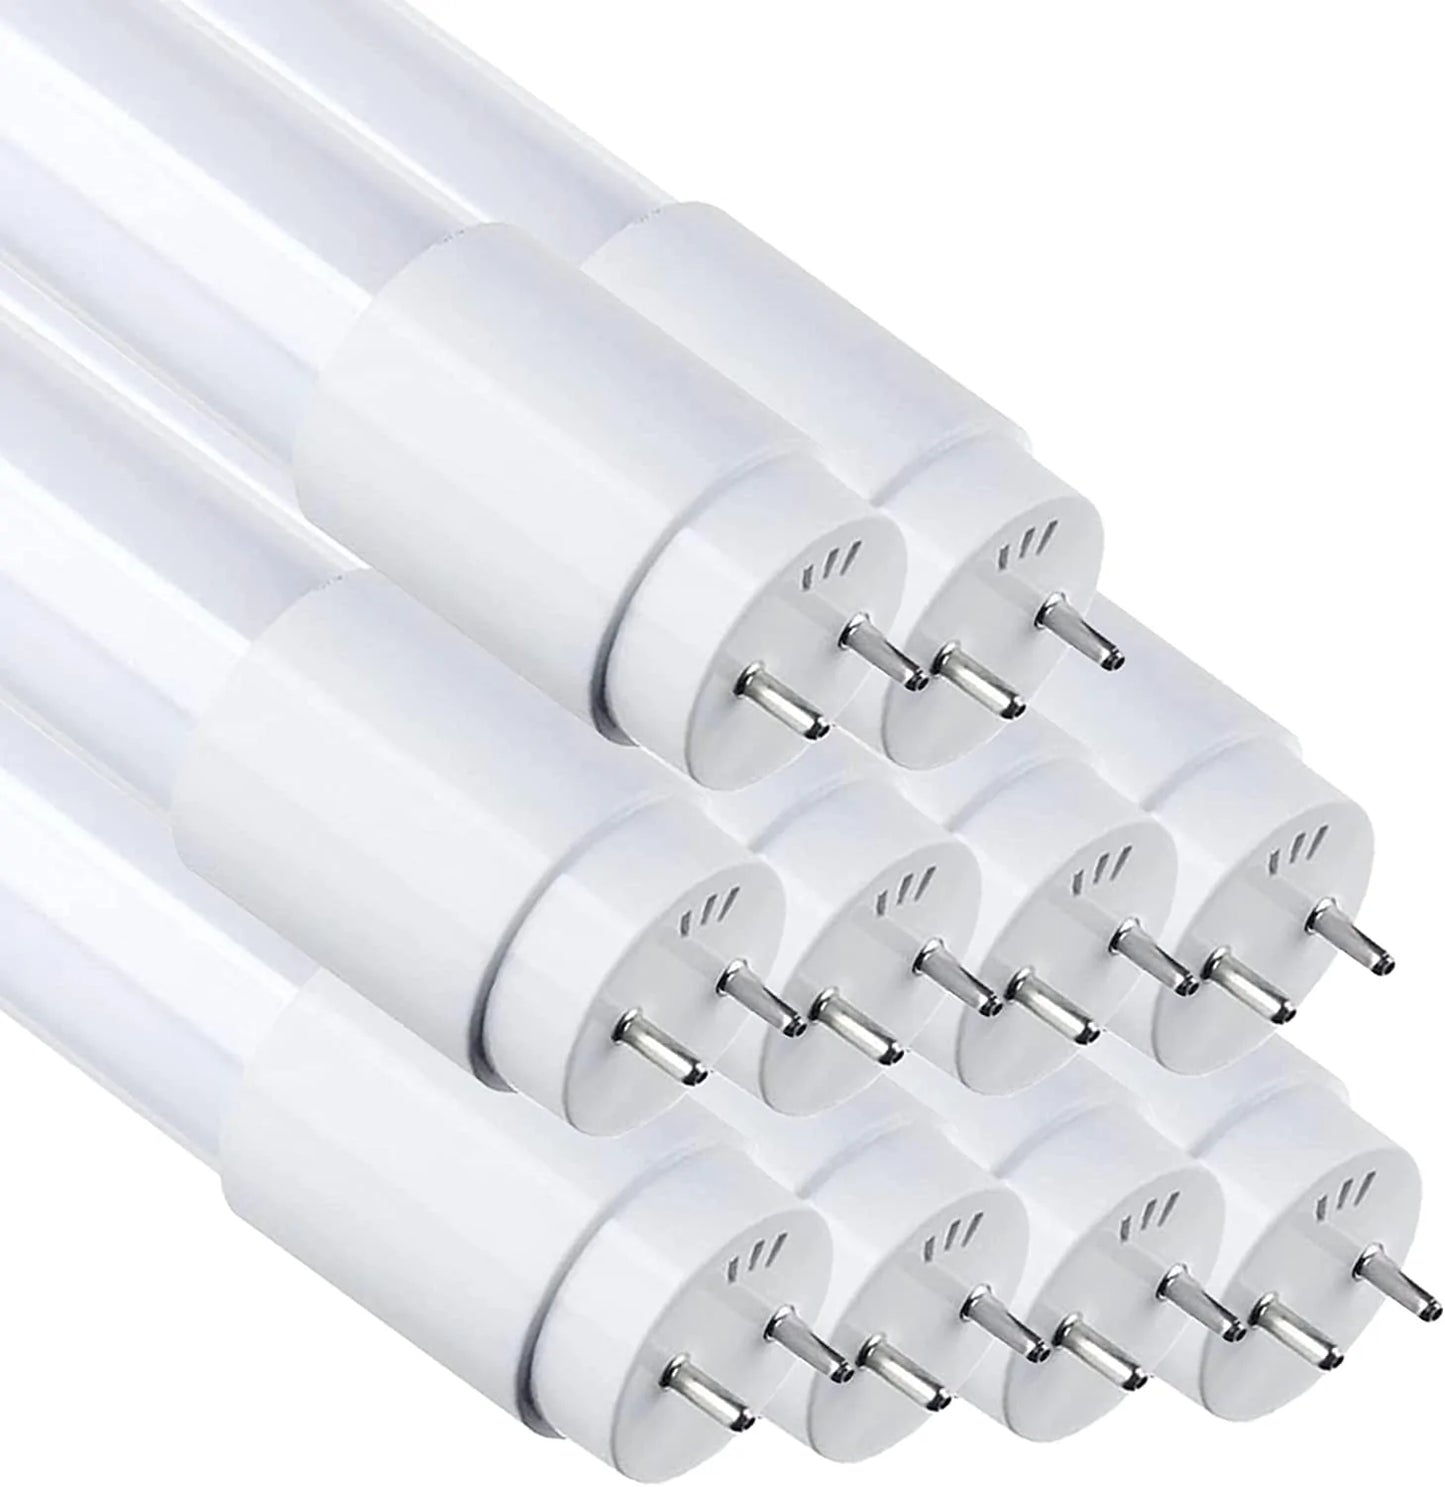 Pack de 10 tubes LED T8 1m20 20W - Couleur blanc froid ou neutre au ch –  Fonatech